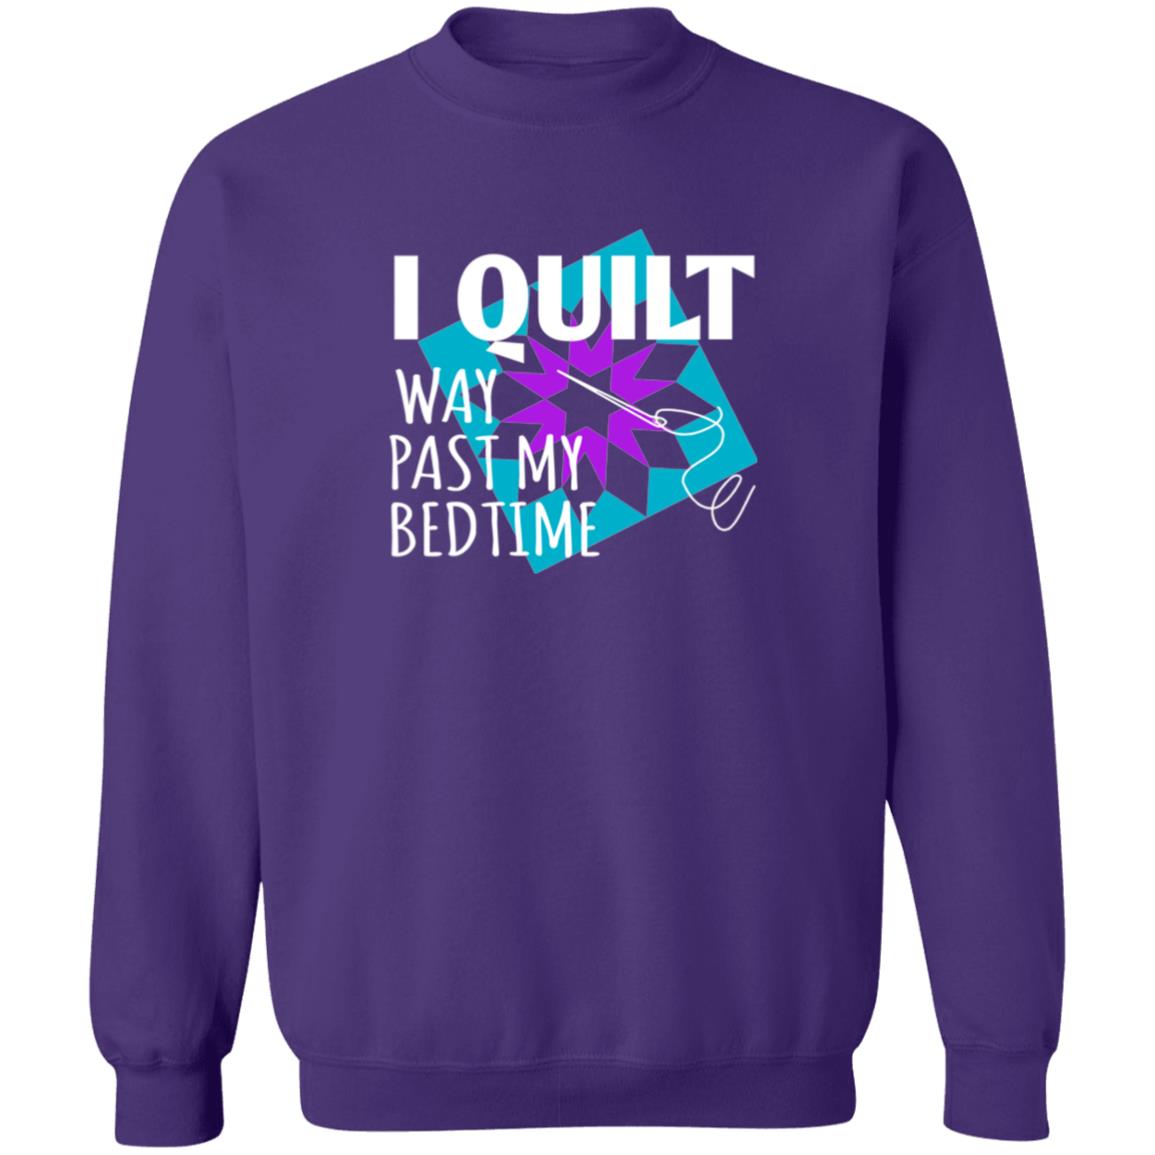 I Quilt Way Past My Bedtime Sweatshirt